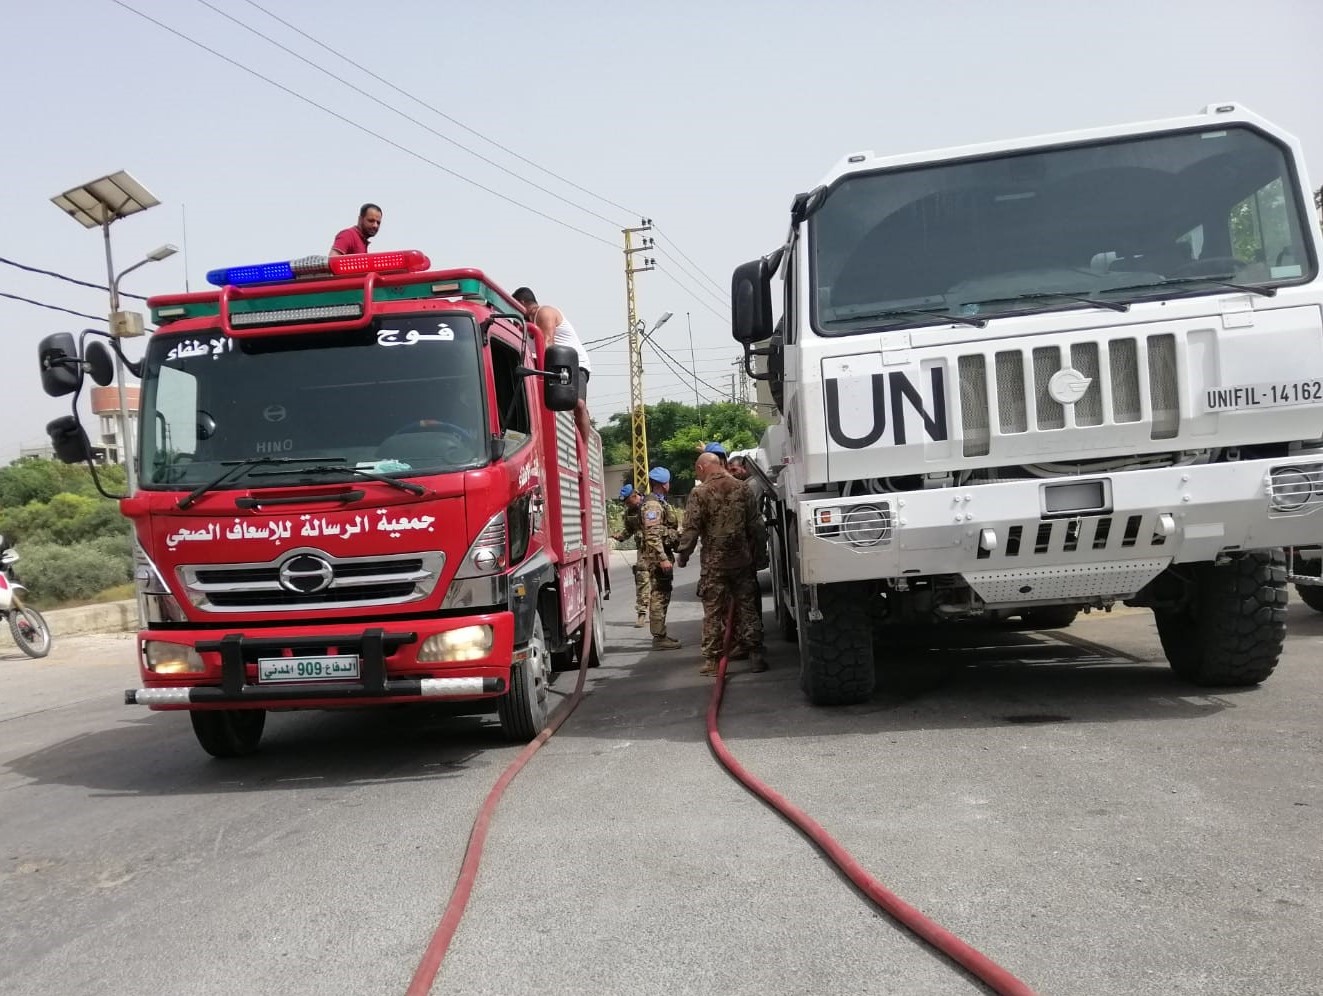 UNIFIL Mezzi antincendio libanesi e Unifil in azione 3